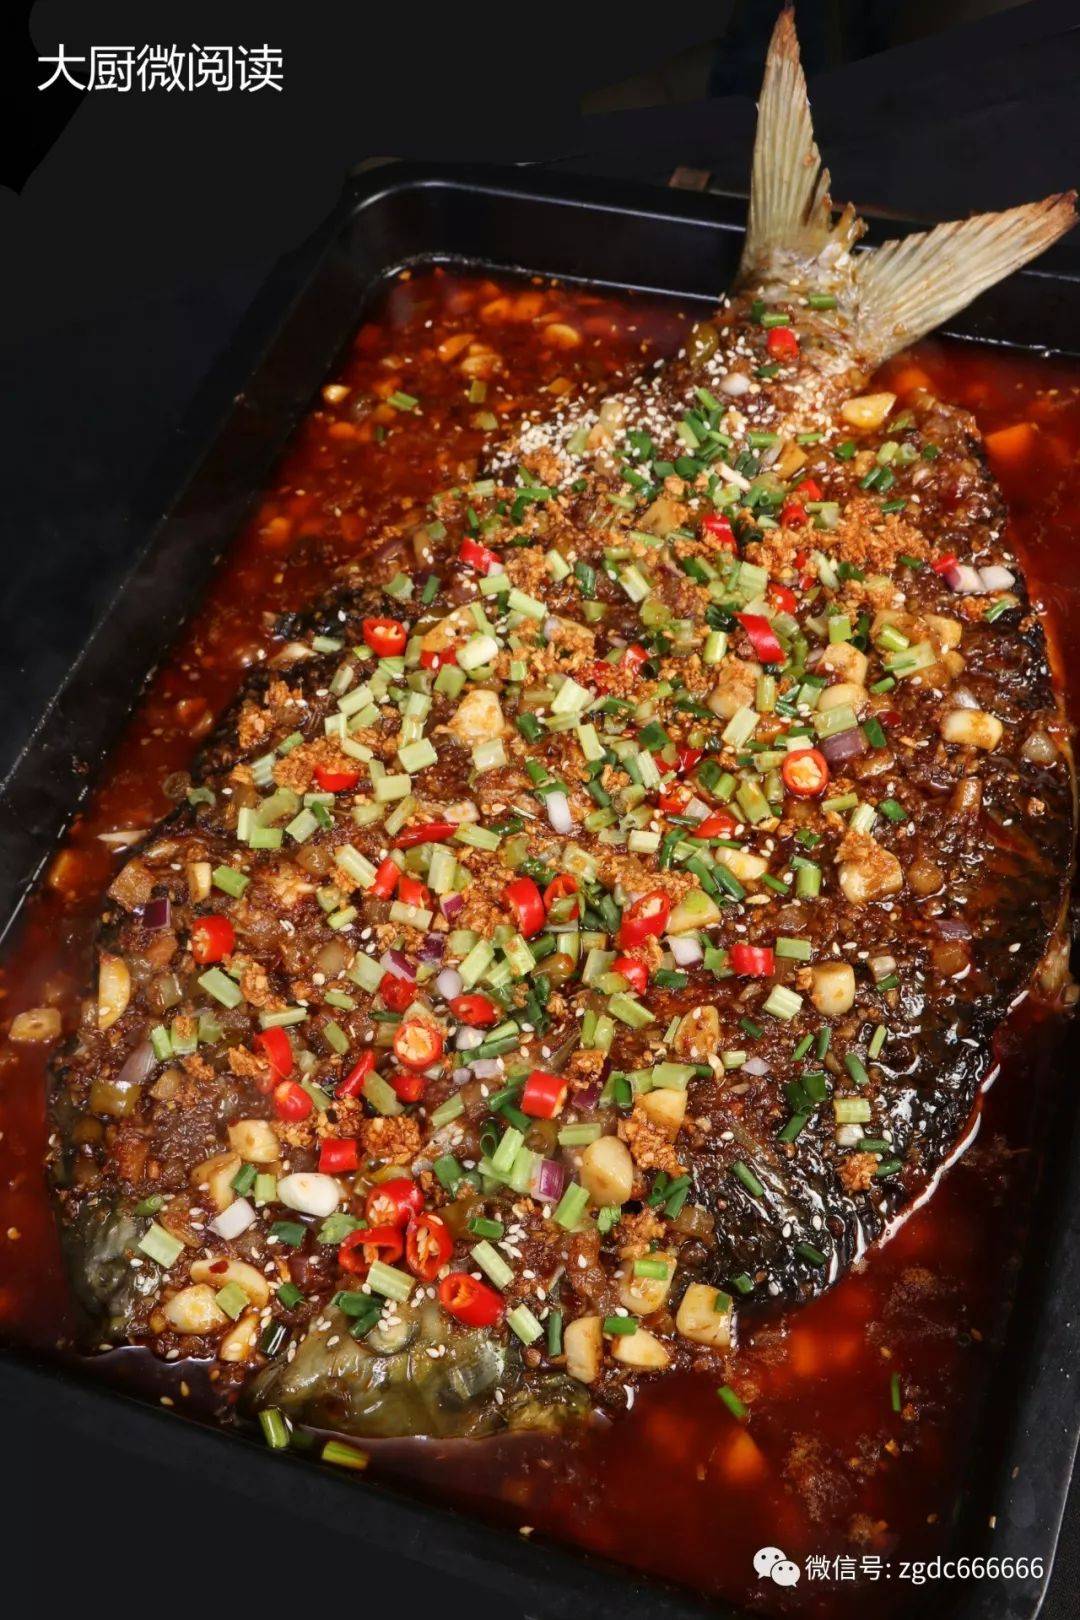 今年火了”烤鱼+”宫保鸡丁烤鱼,椒麻牛蛙烤鱼,麻辣花甲烤鱼…一菜两味